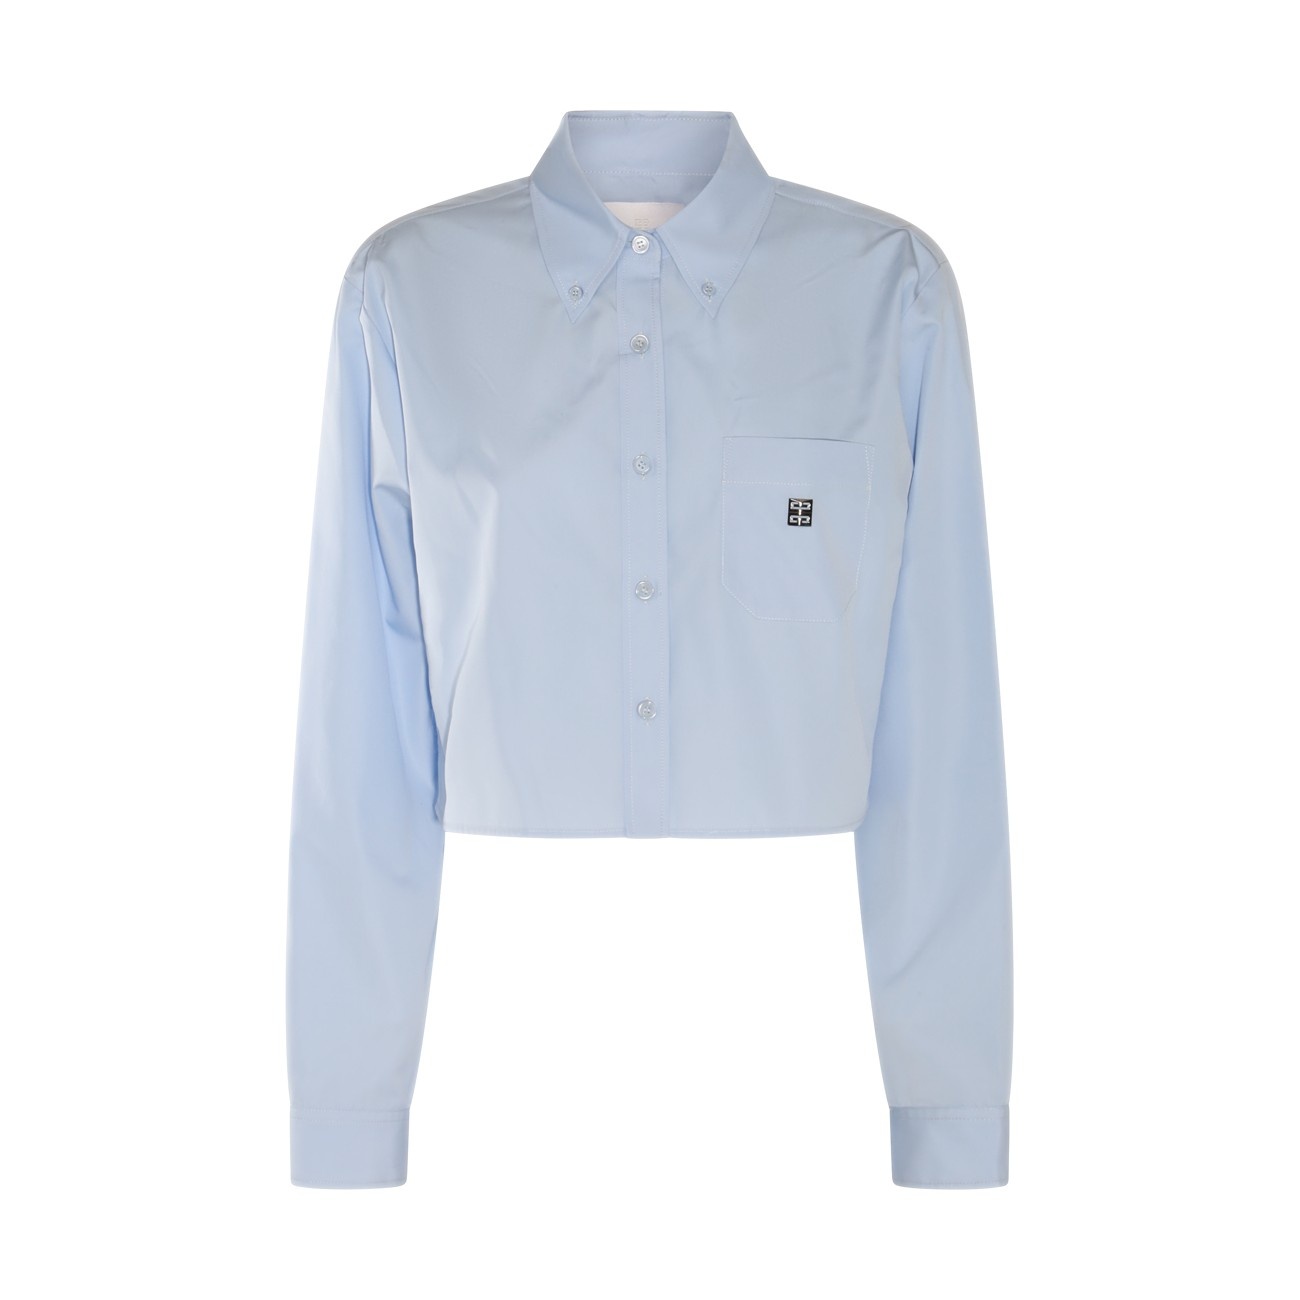 light blue cotton shirt - 1